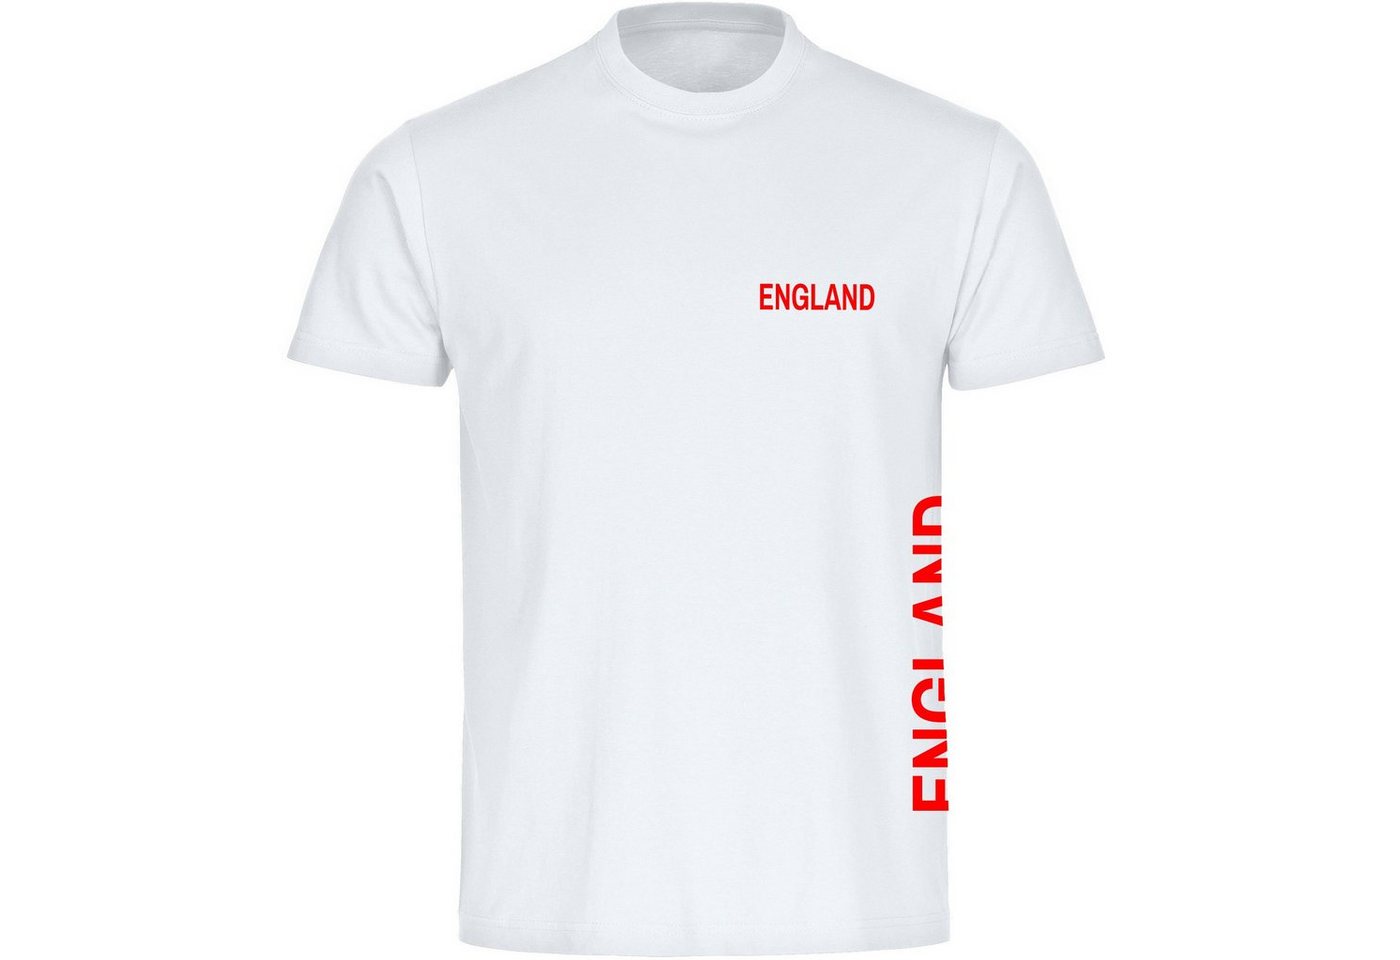 multifanshop T-Shirt Kinder England - Brust & Seite - Boy Girl von multifanshop